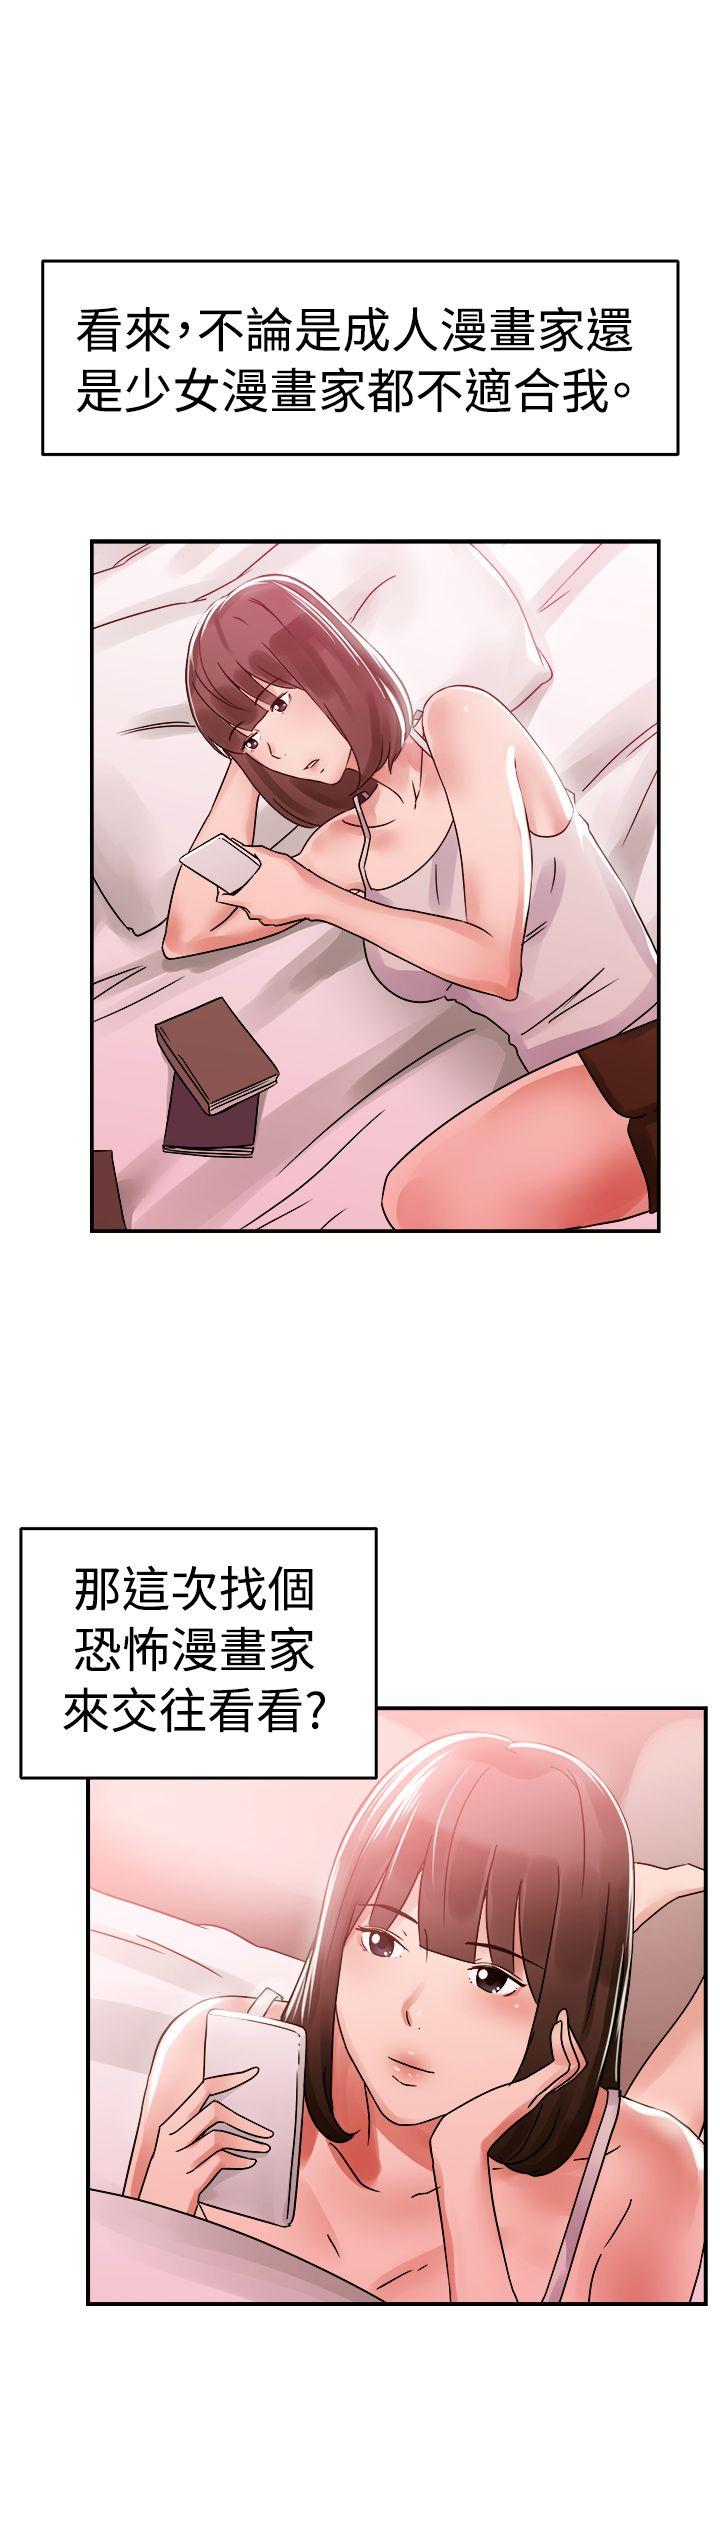 韩国污漫画 前男友前女友 第54话亲身体验成人漫画&少女漫画(下) 18